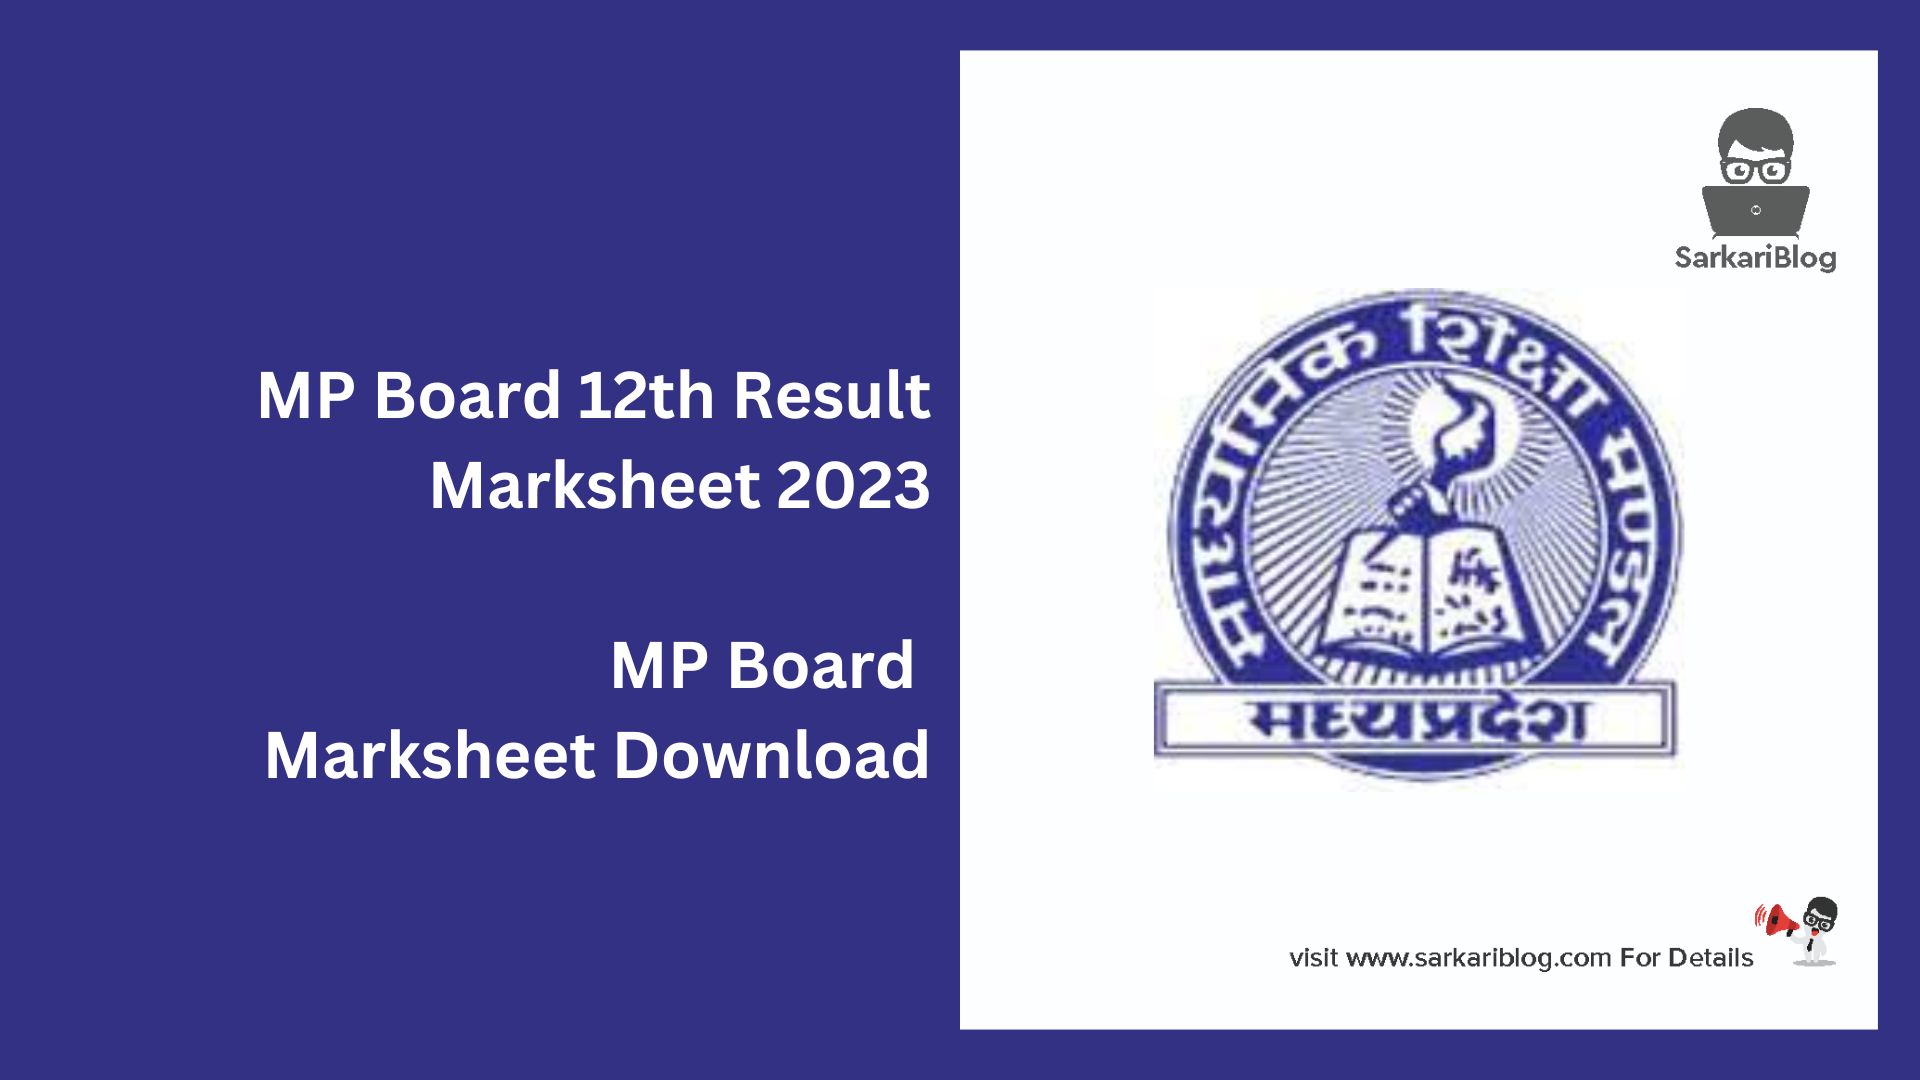 MP Board 12th Result Marksheet 2023